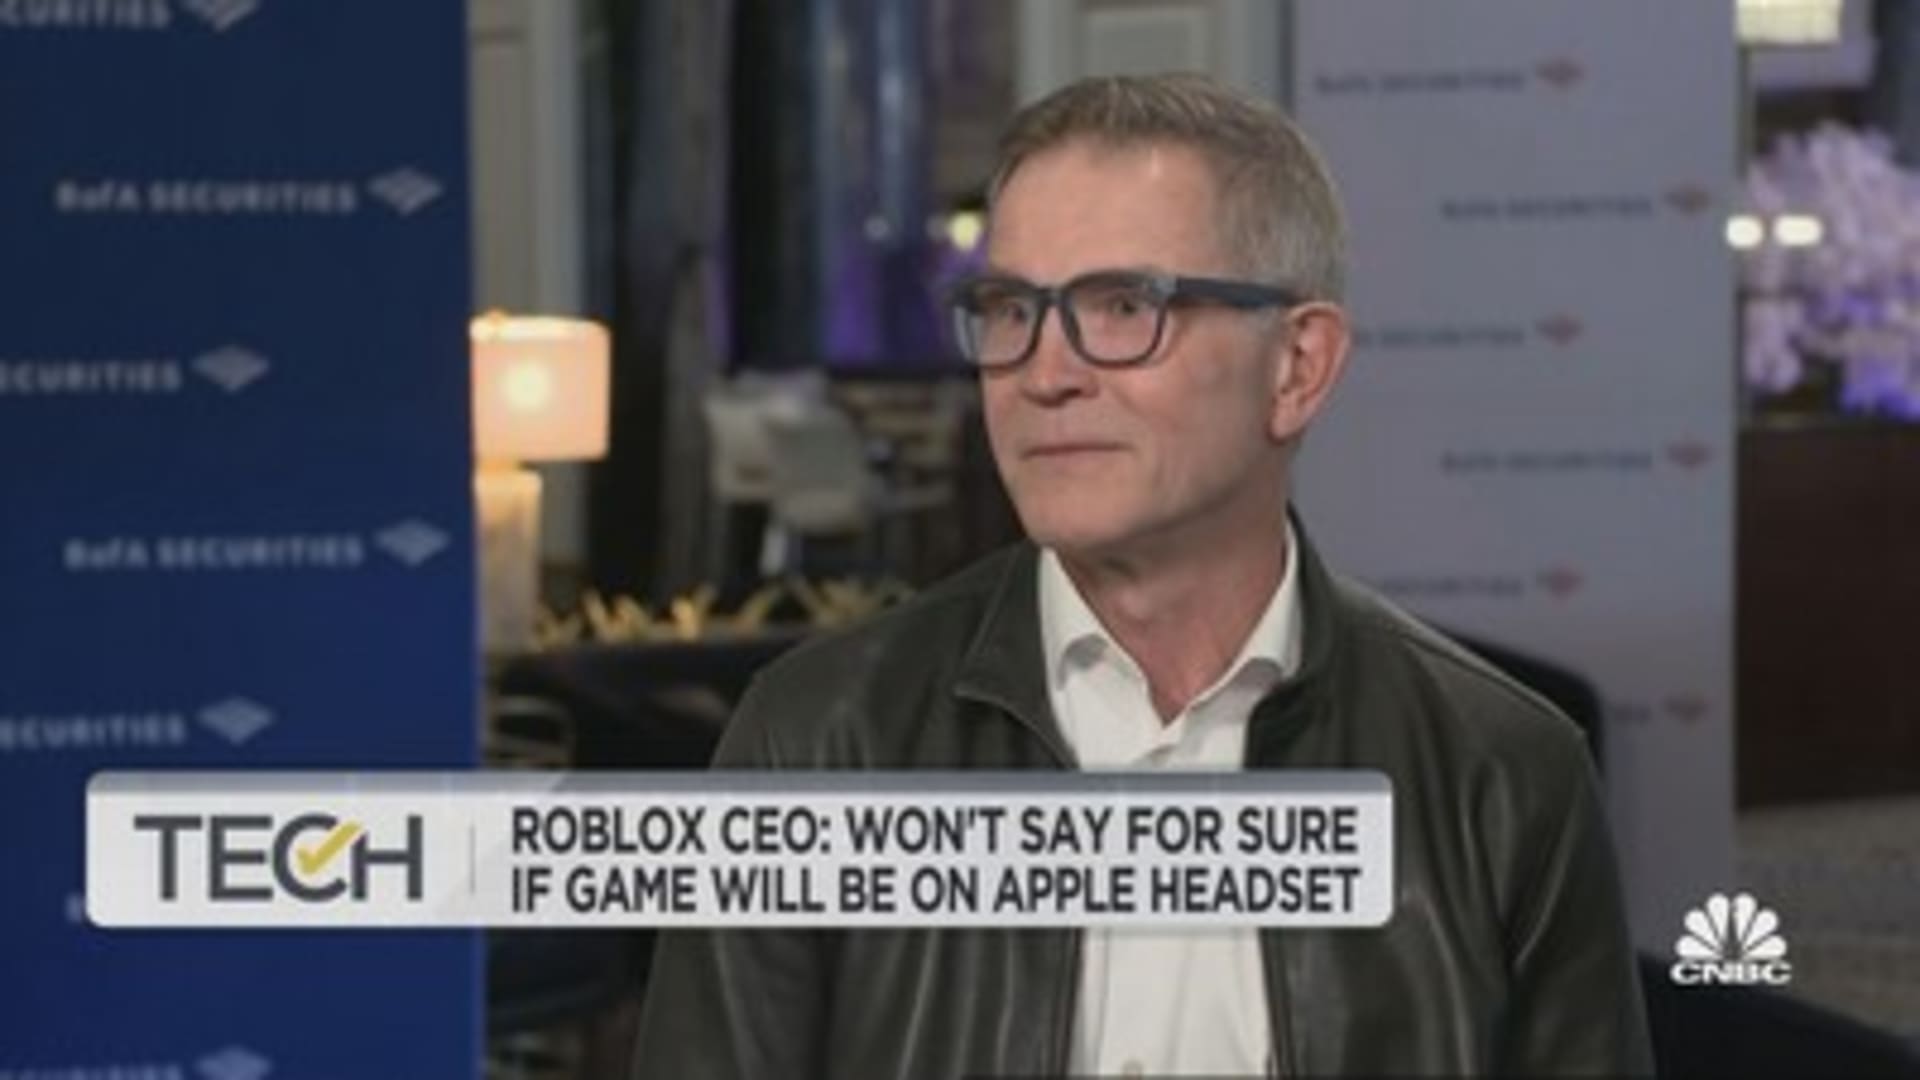 Viciante Roblox, do bilionário David Baszucki, se assemelha ao   entre a Geração Z - Forbes